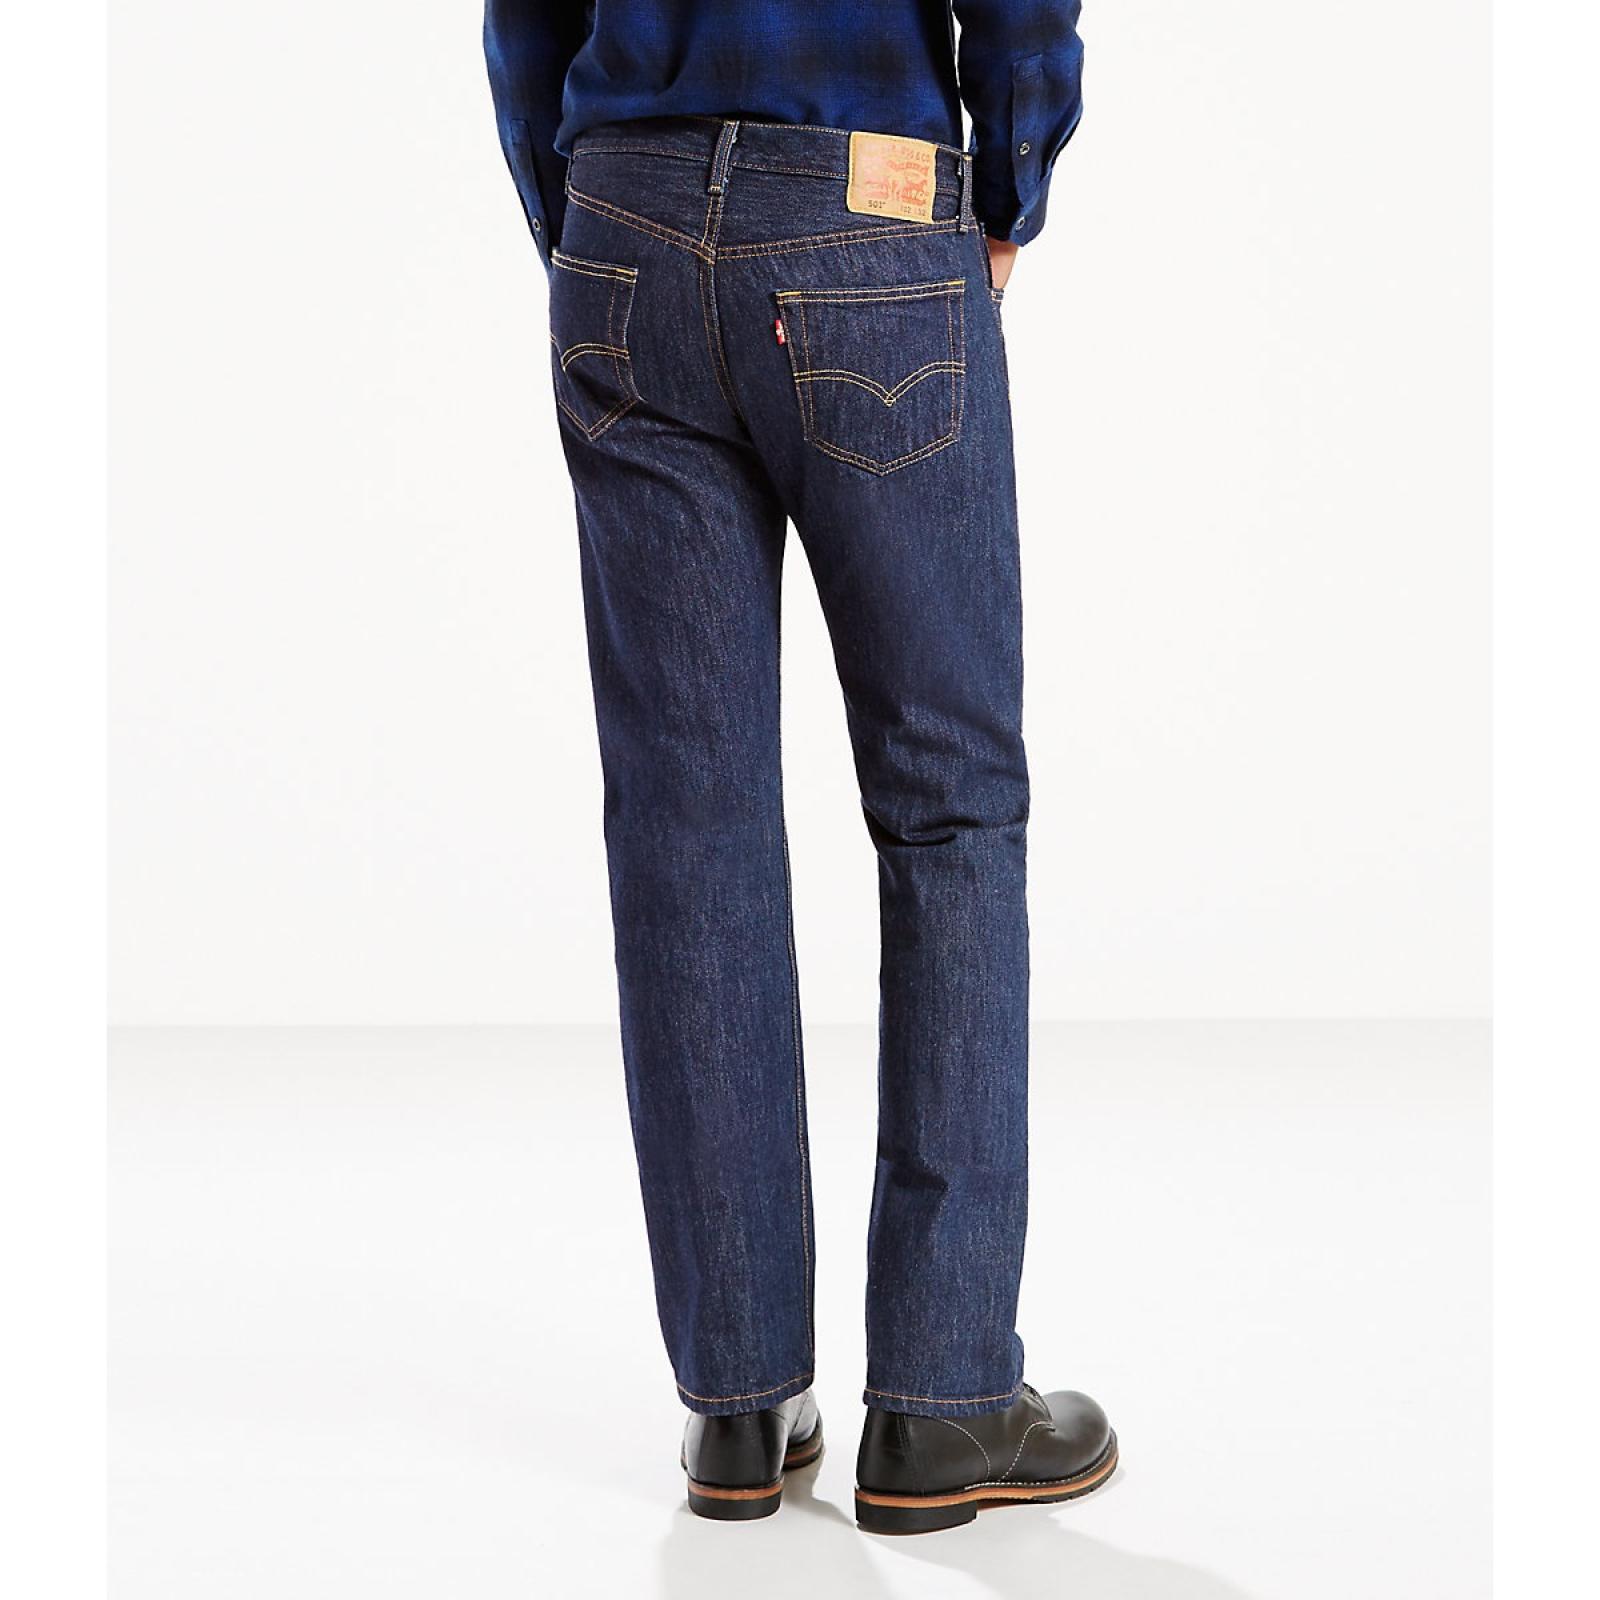 Levi's 501® Original Fit Men's Jeans